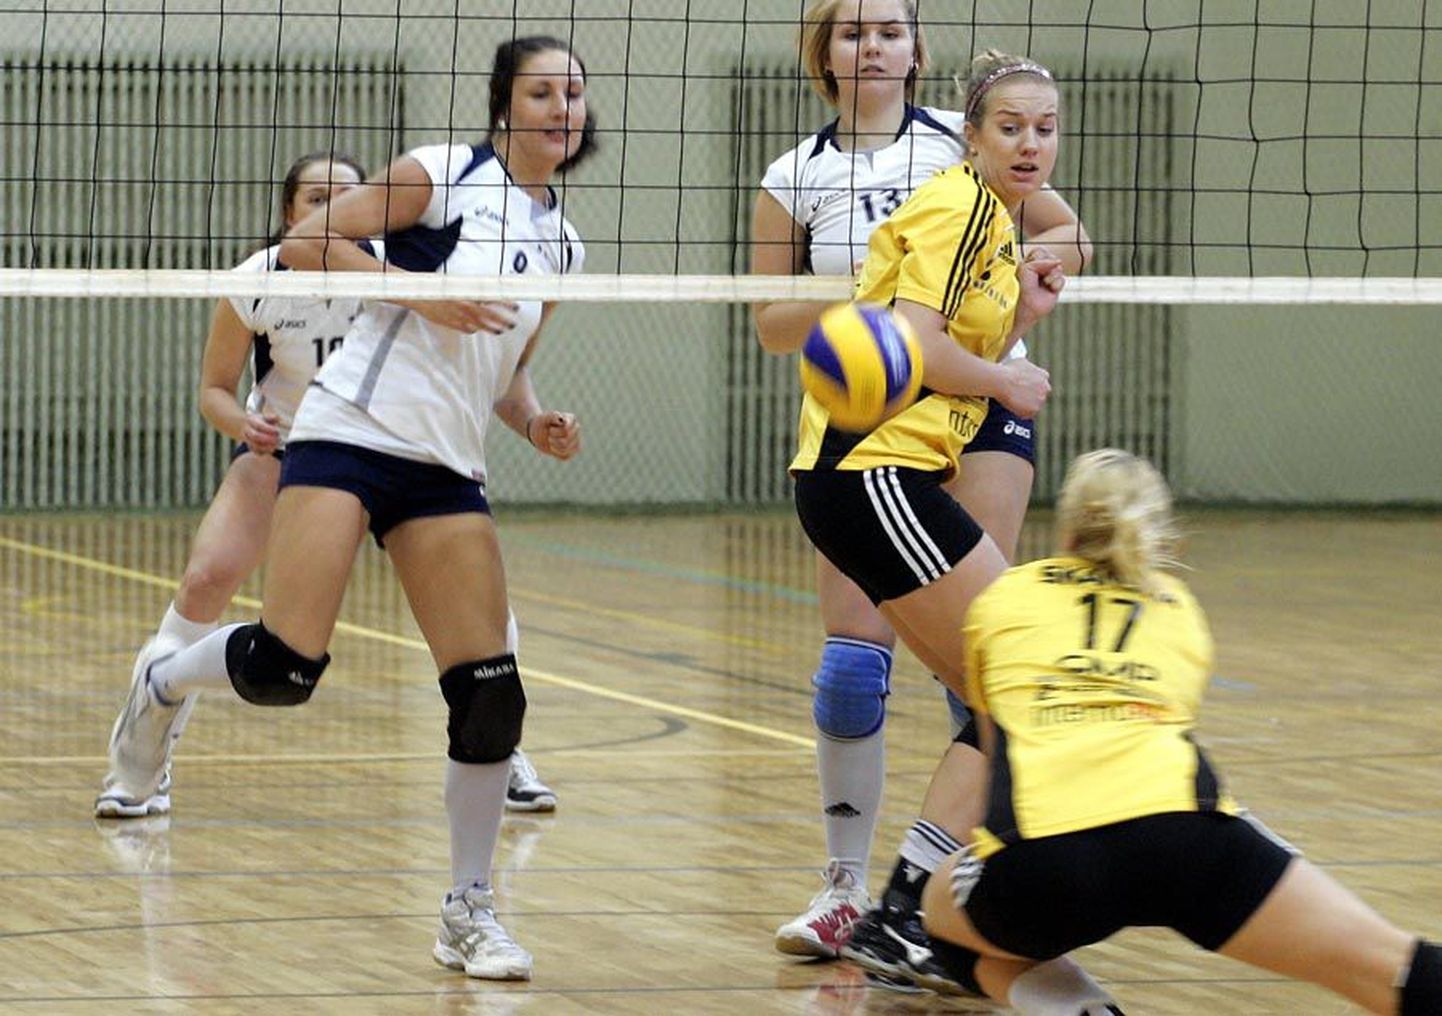 Pilt on tehtud eelmisel hooajal Viljandis peetud Eesti meistrivõistluste finaalmängul.